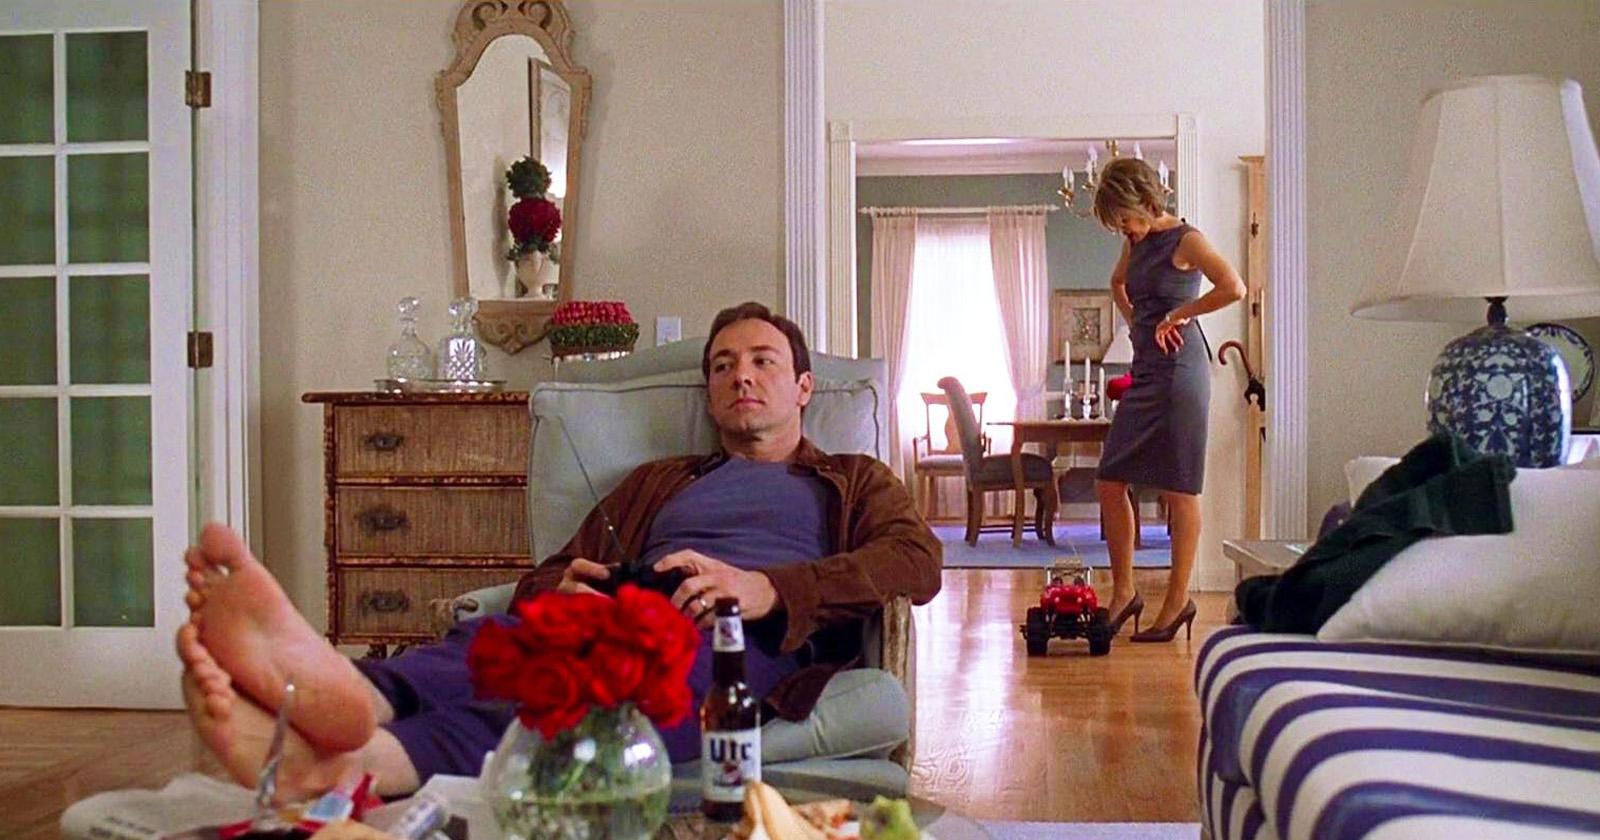 Lester (Kevin Spacey) tendido sobre un sillón. Detrás, Carolyn (Annette Bening) pasando la aspiradora. Escena de American Beauty.